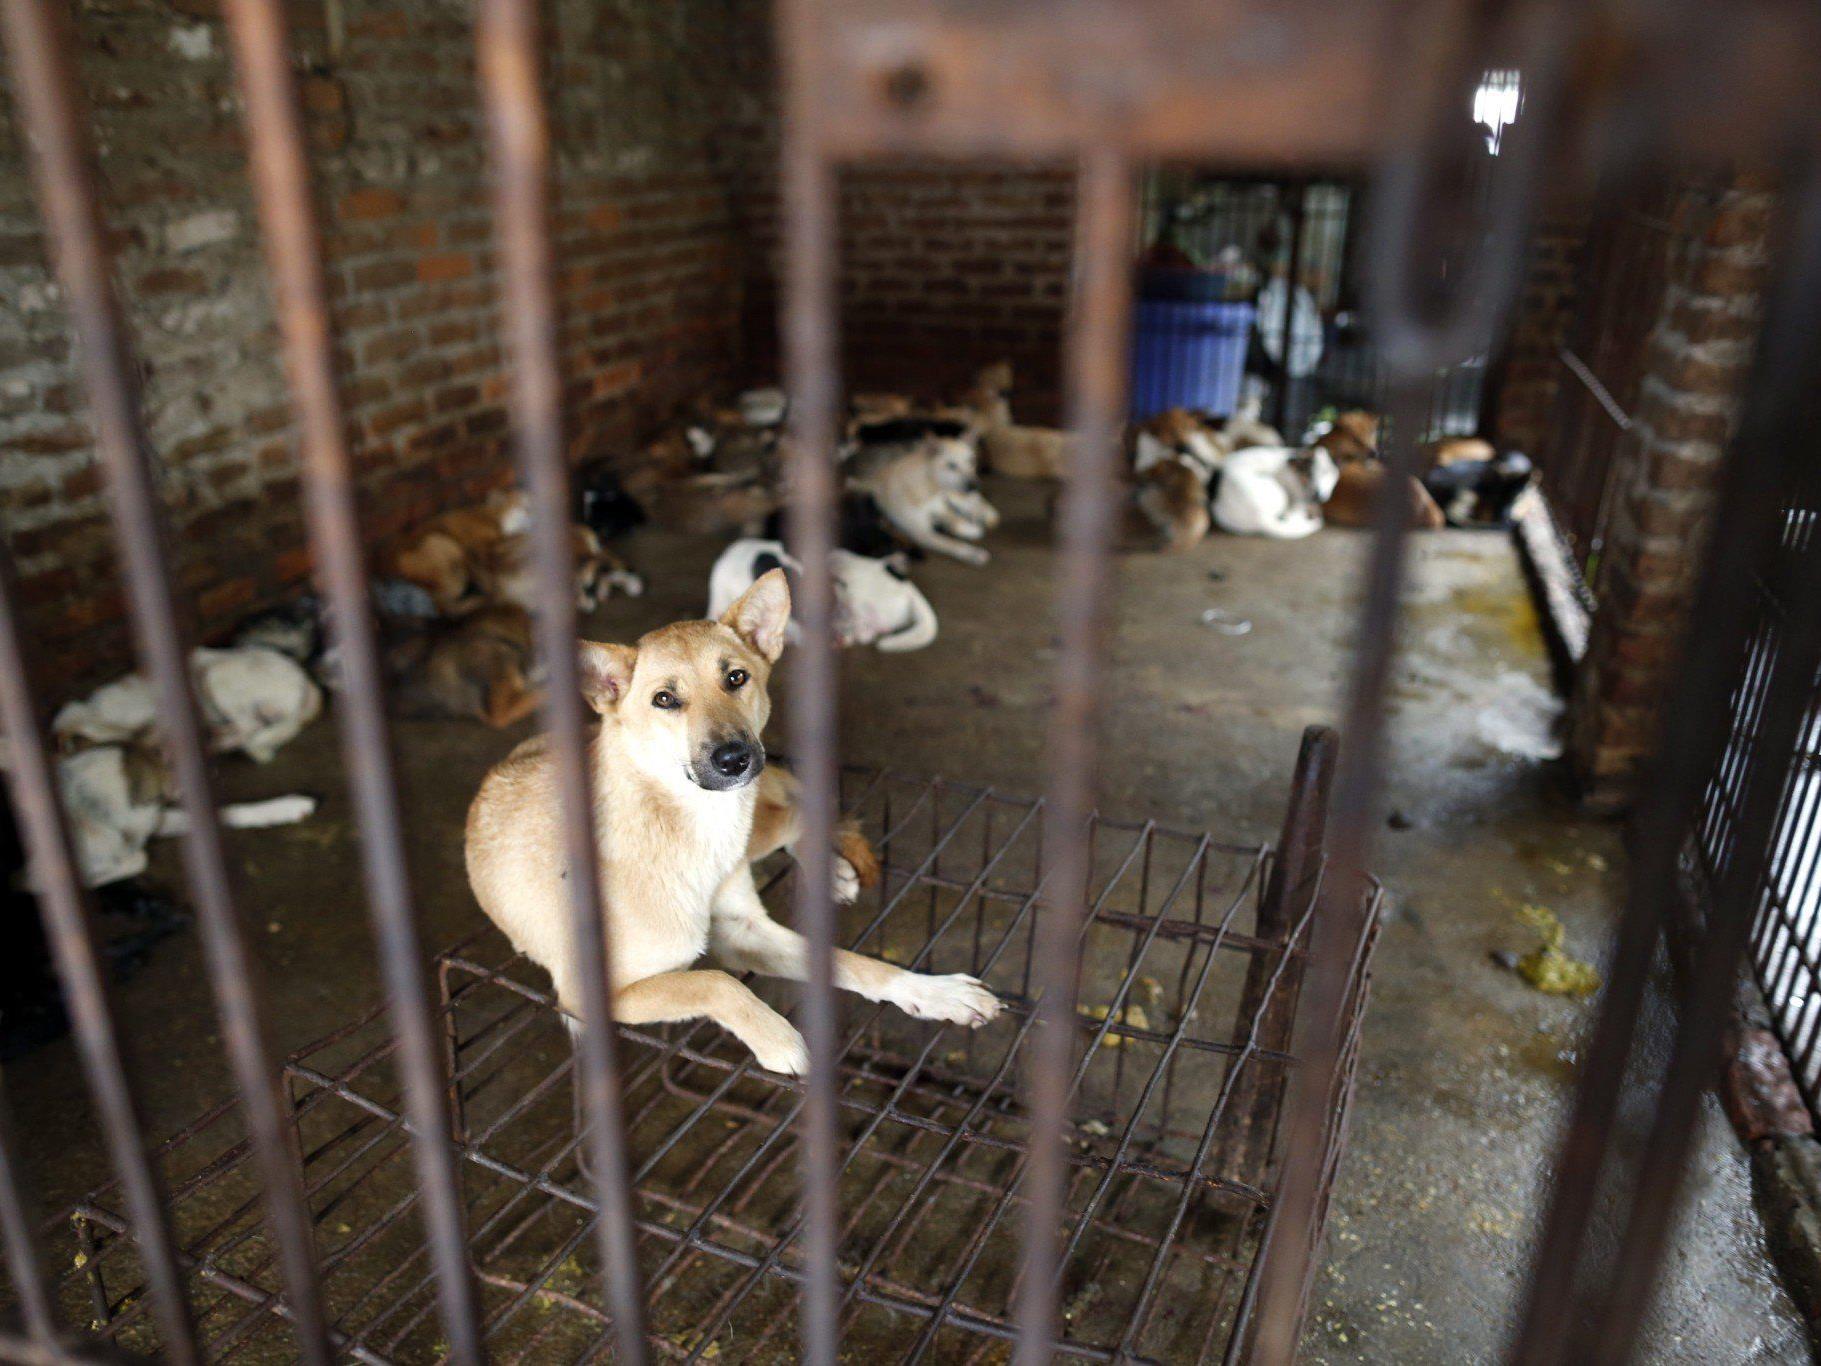 10.000 Tiere sterben in diesem Jahr beim "Hundefleisch-Fest".